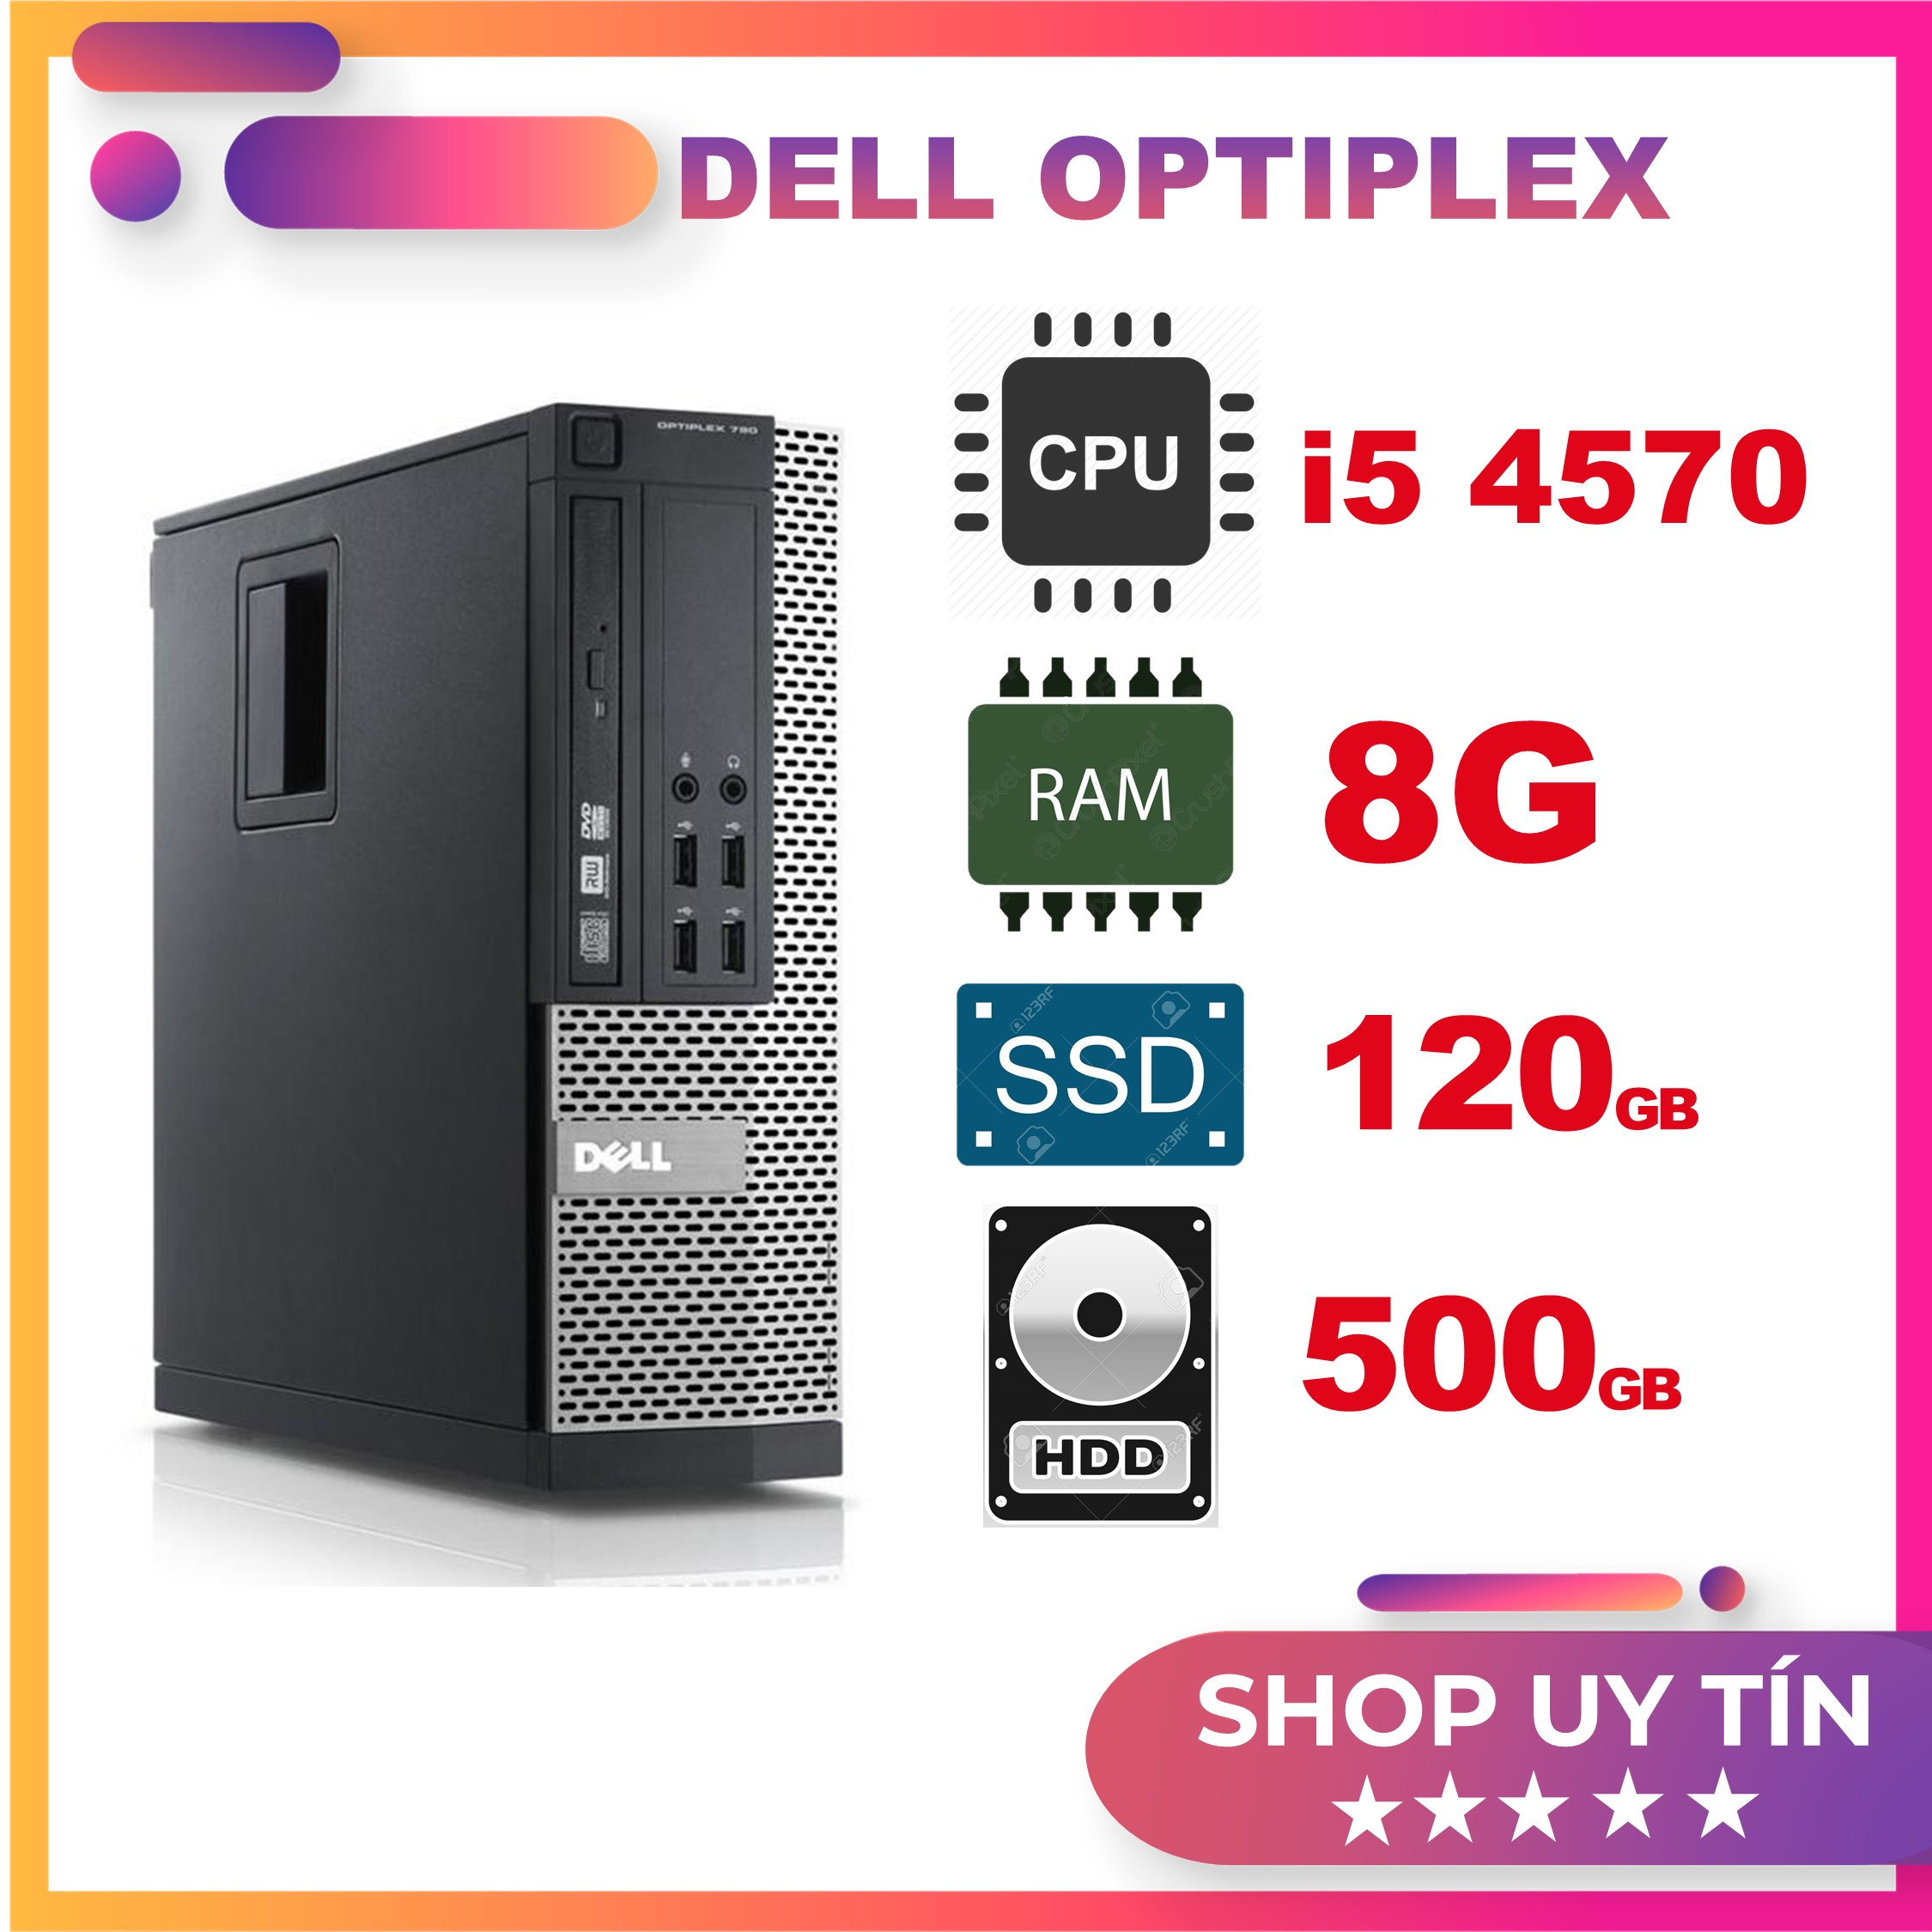 Máy Tính Dell Optiplex 990, Cấu hình ( Core i3-2100 / ram 4GB / 128GB )  - Hàng chính hãng